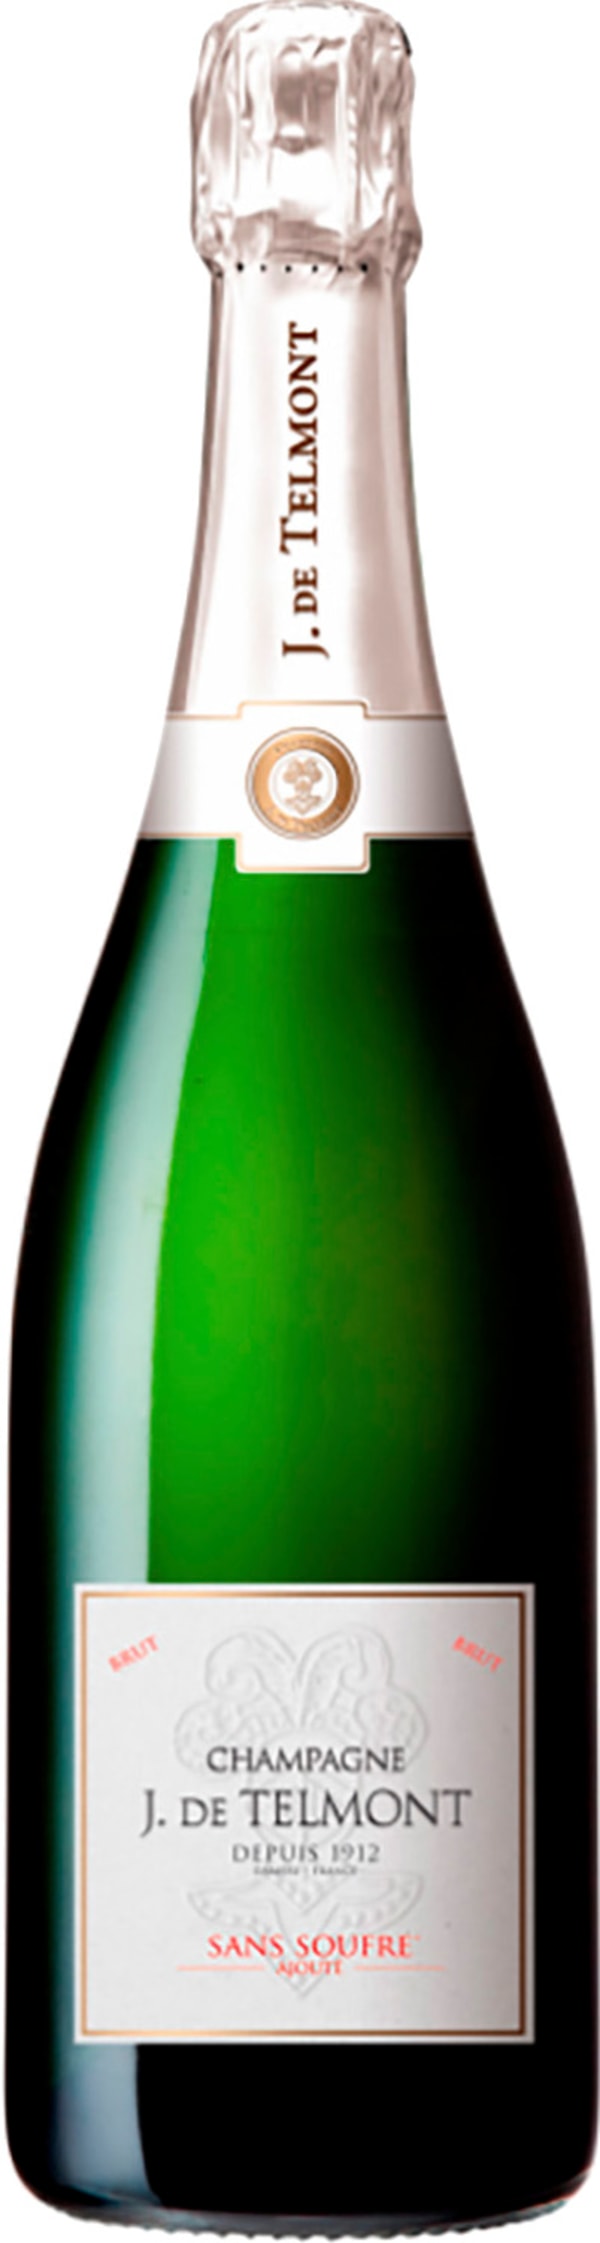 Champagne - J. de Telmont Sans Soufre Ajoute Brut